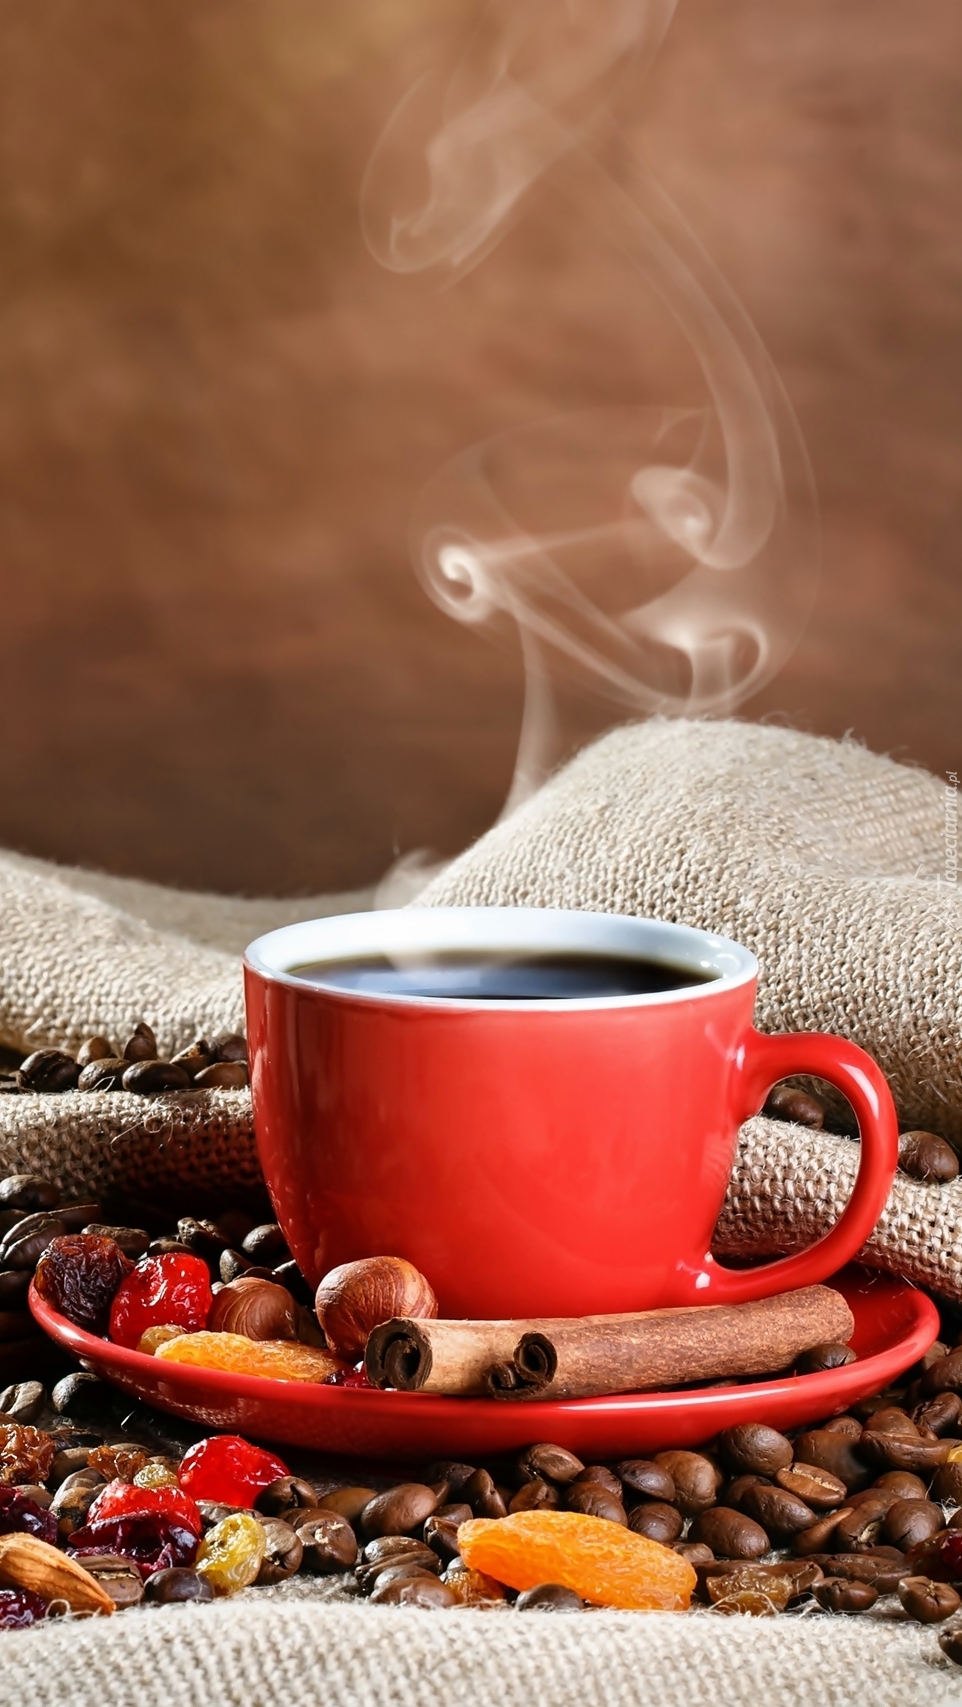 Parująca kawa w czerwonej filiżance